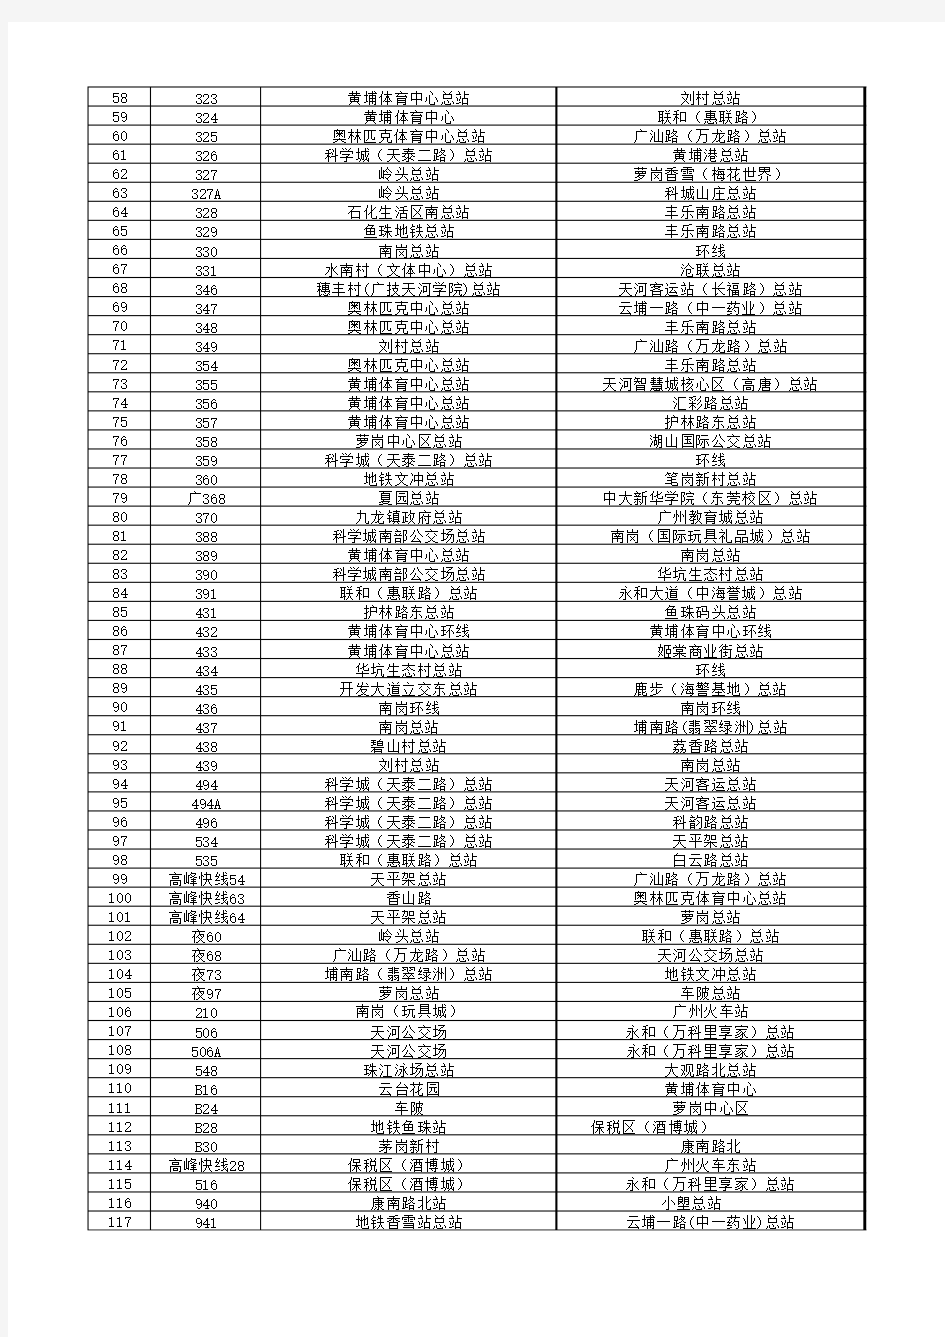 广州开发区黄埔区公交线路一览表截至2017年11月